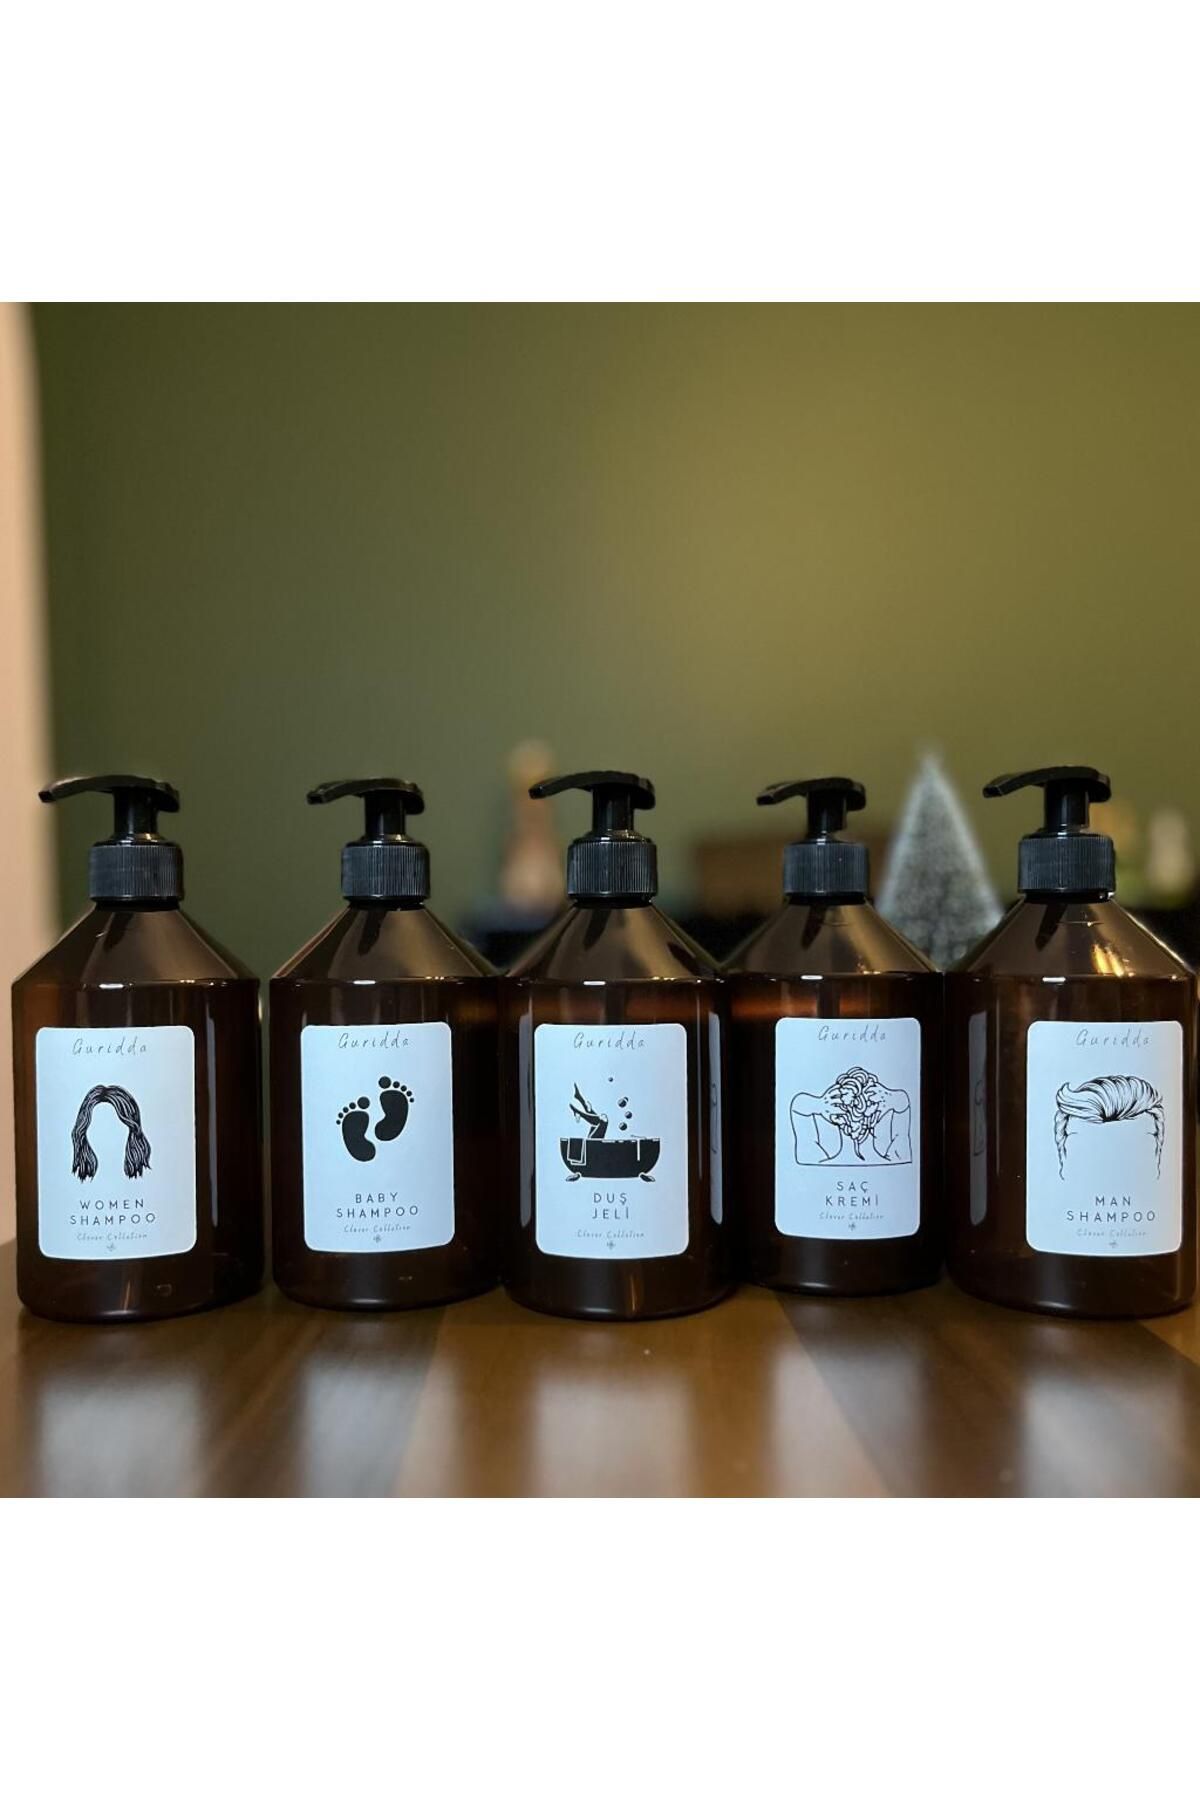 Guridda Home Design Erkek Şampuan Kadın Şampuan Bebek Şampuan  Duş Jeli Saç Kremi  Etiketli Plastik Amber Şişe 500ml